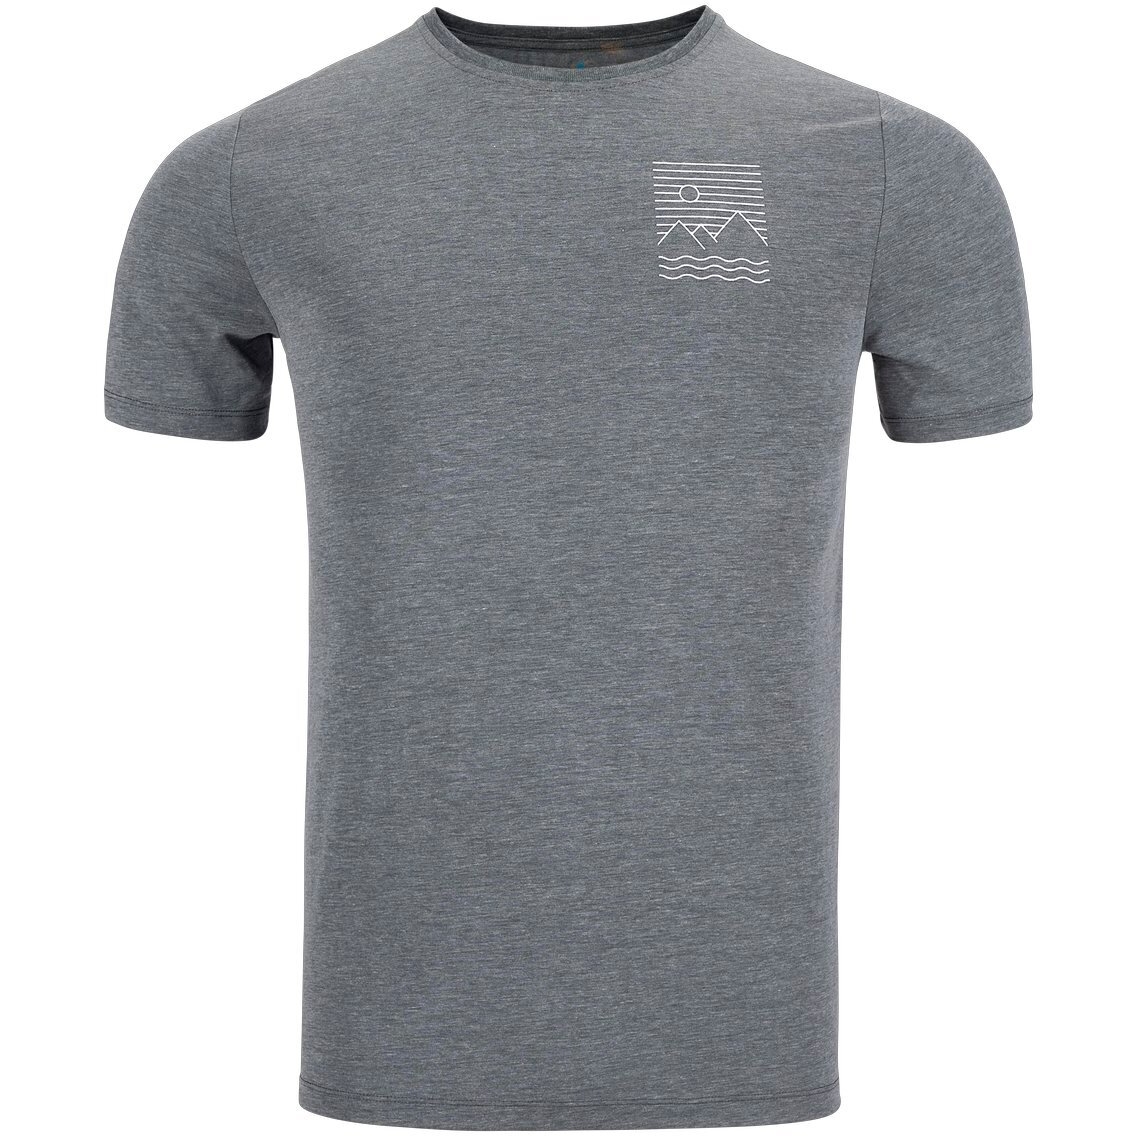 Image of Odlo Ascent 365 Linear T-Shirt Men - black melange